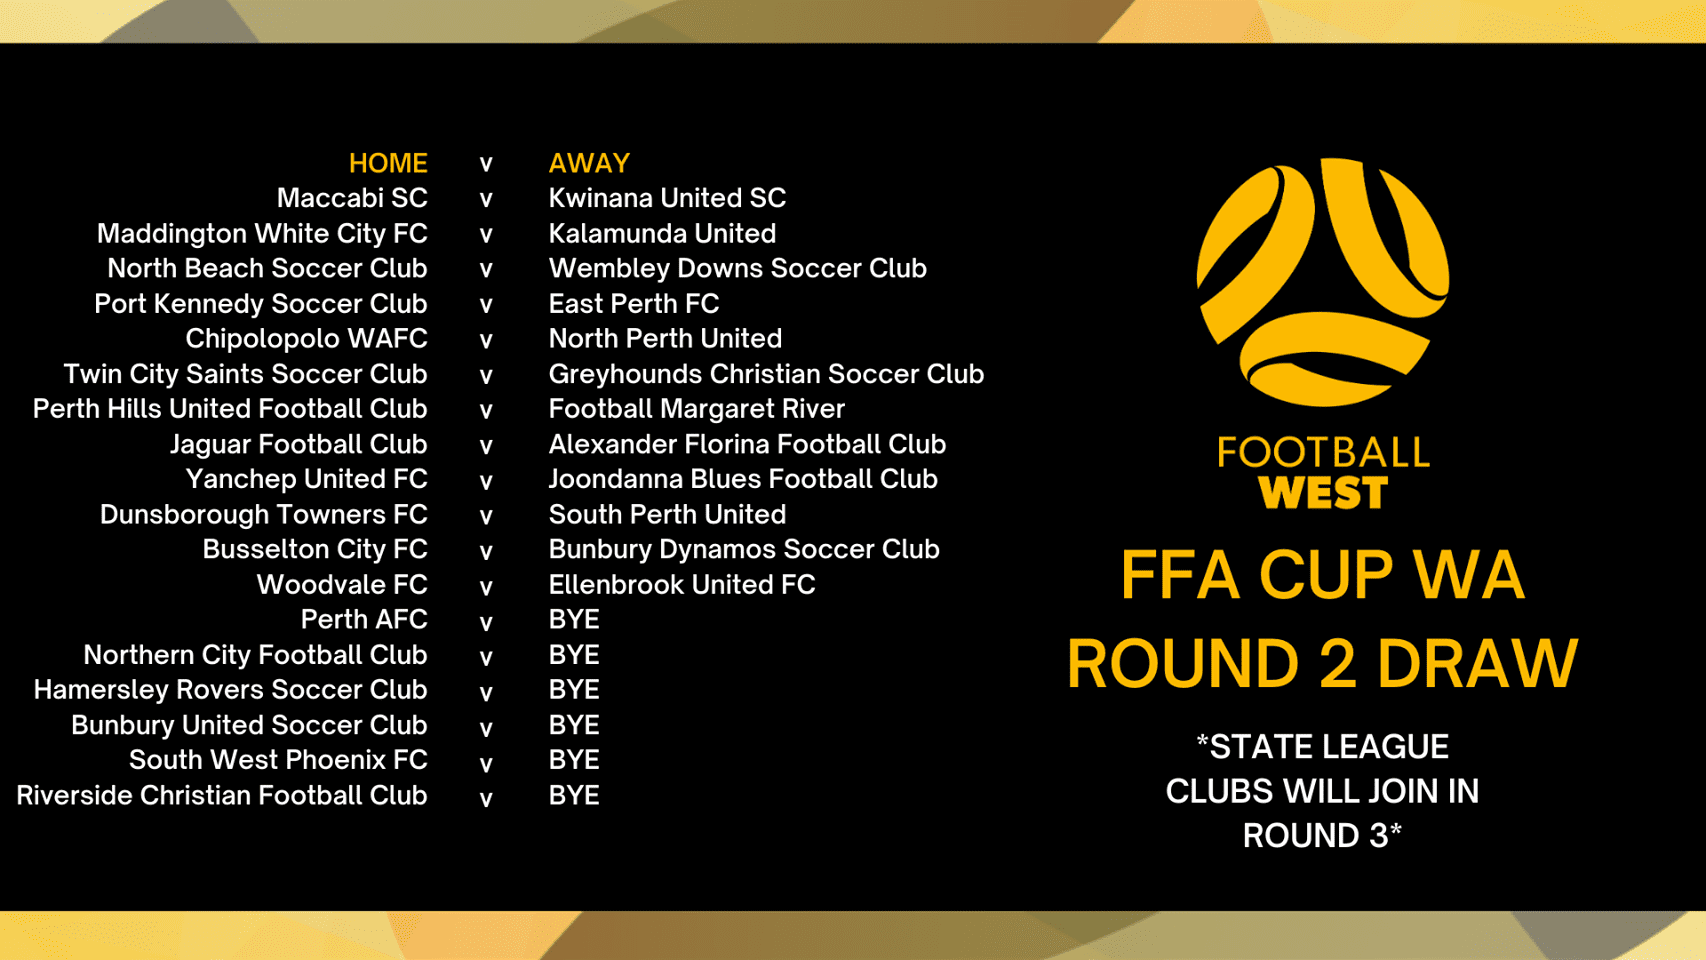 FFA cup info graphic